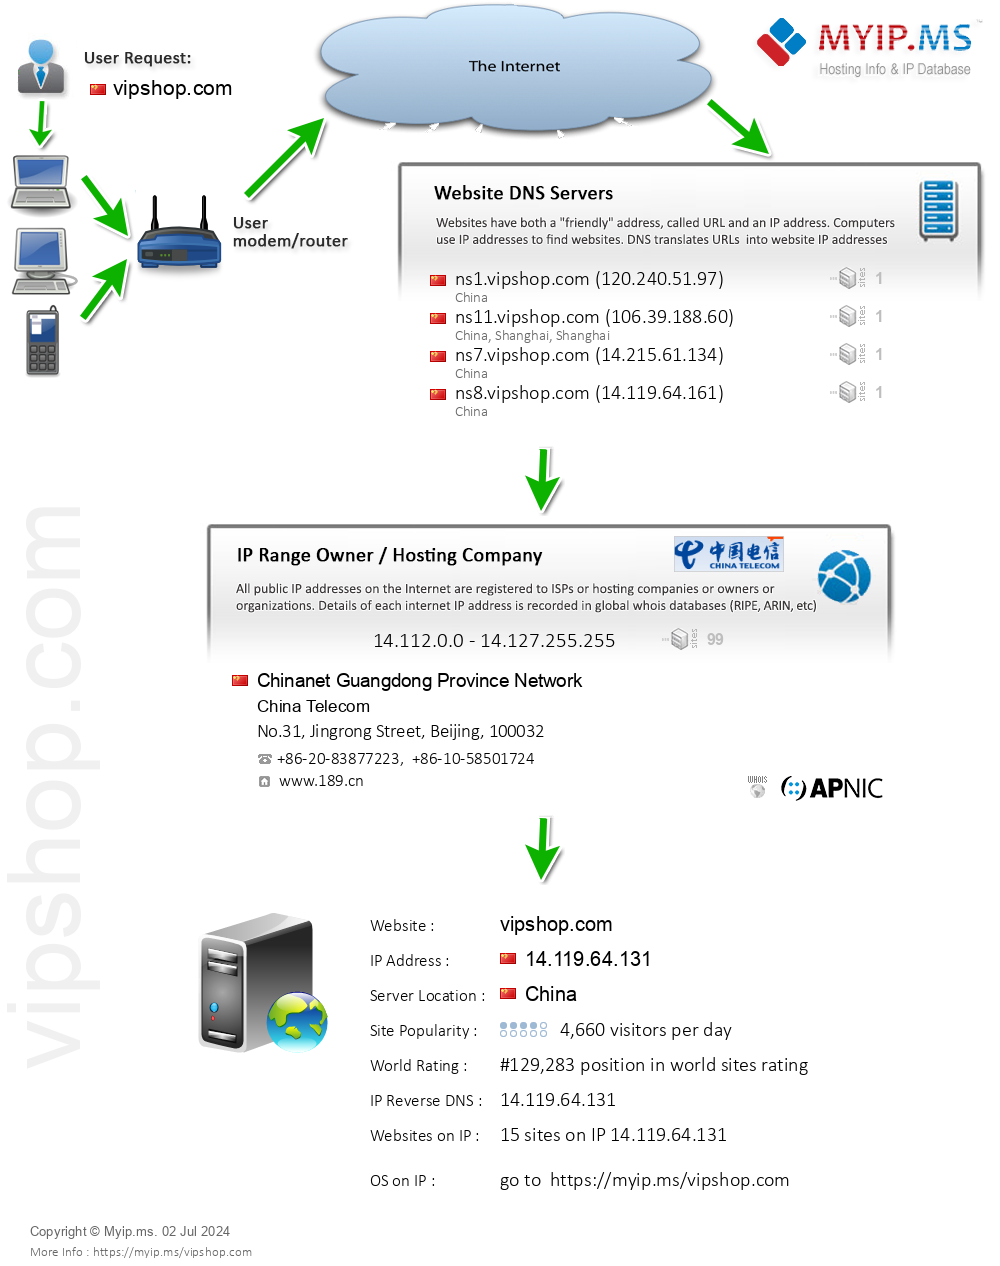 Vipshop.com - Website Hosting Visual IP Diagram